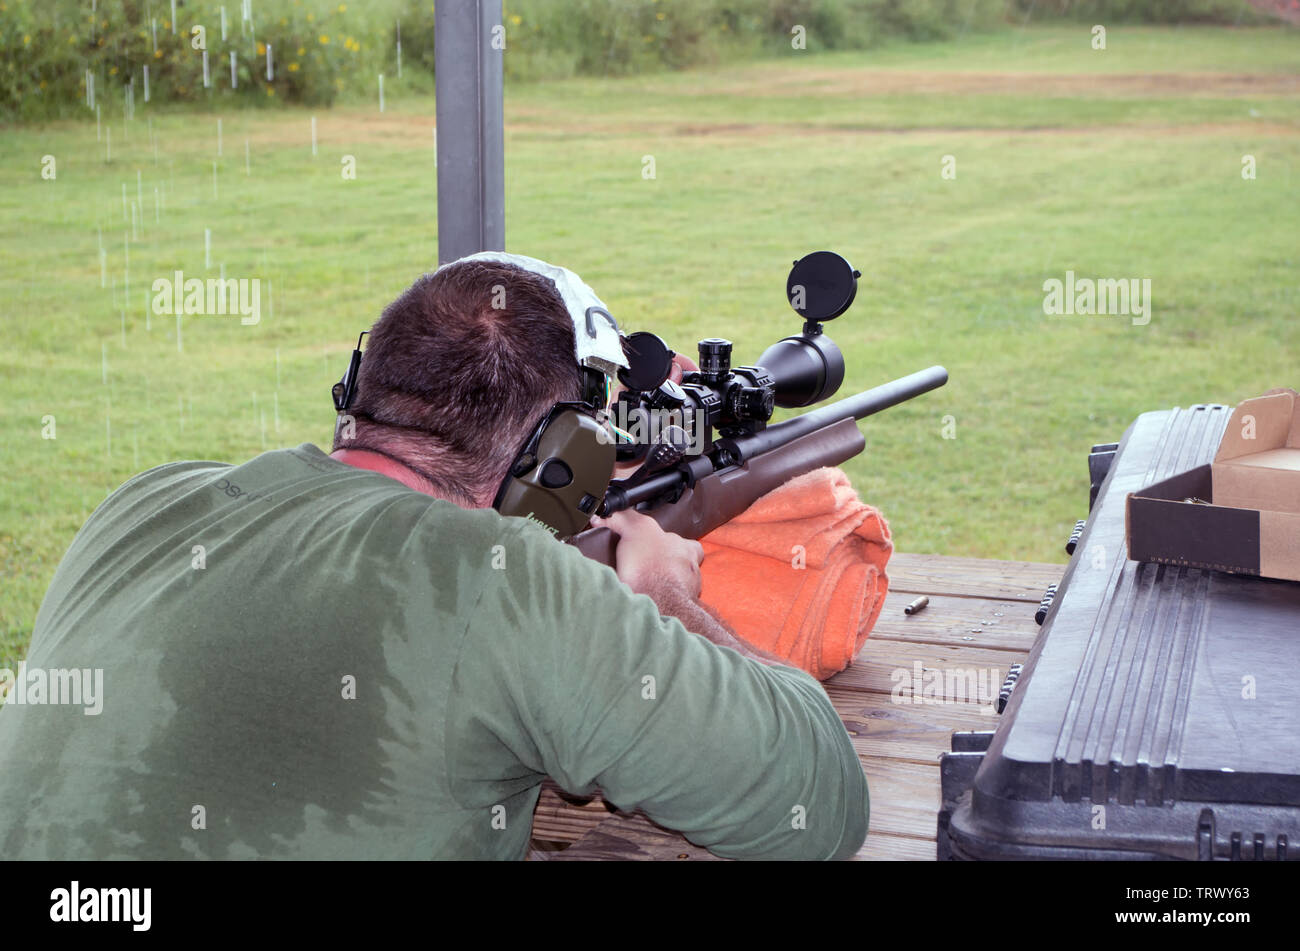 Un uomo si regola la portata su un modello Remington 700 SPS Tactical AAC calibro .308 fucile bolt action a un poligono di tiro nel Corpus Christi, Texas USA. Foto Stock